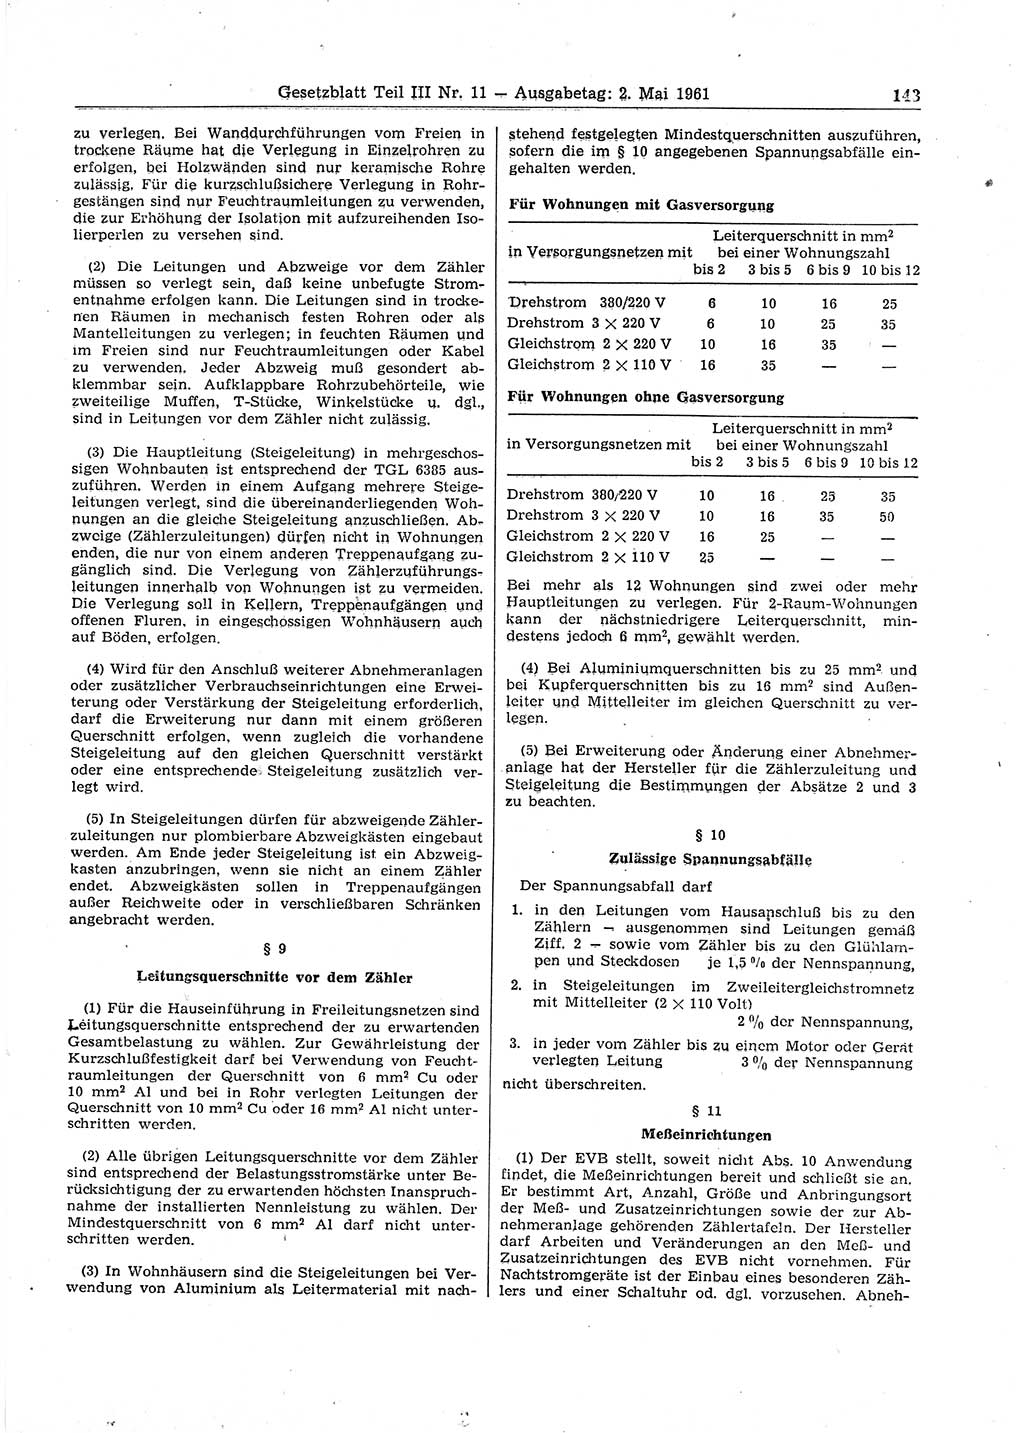 Gesetzblatt (GBl.) der Deutschen Demokratischen Republik (DDR) Teil ⅠⅠⅠ 1961, Seite 143 (GBl. DDR ⅠⅠⅠ 1961, S. 143)